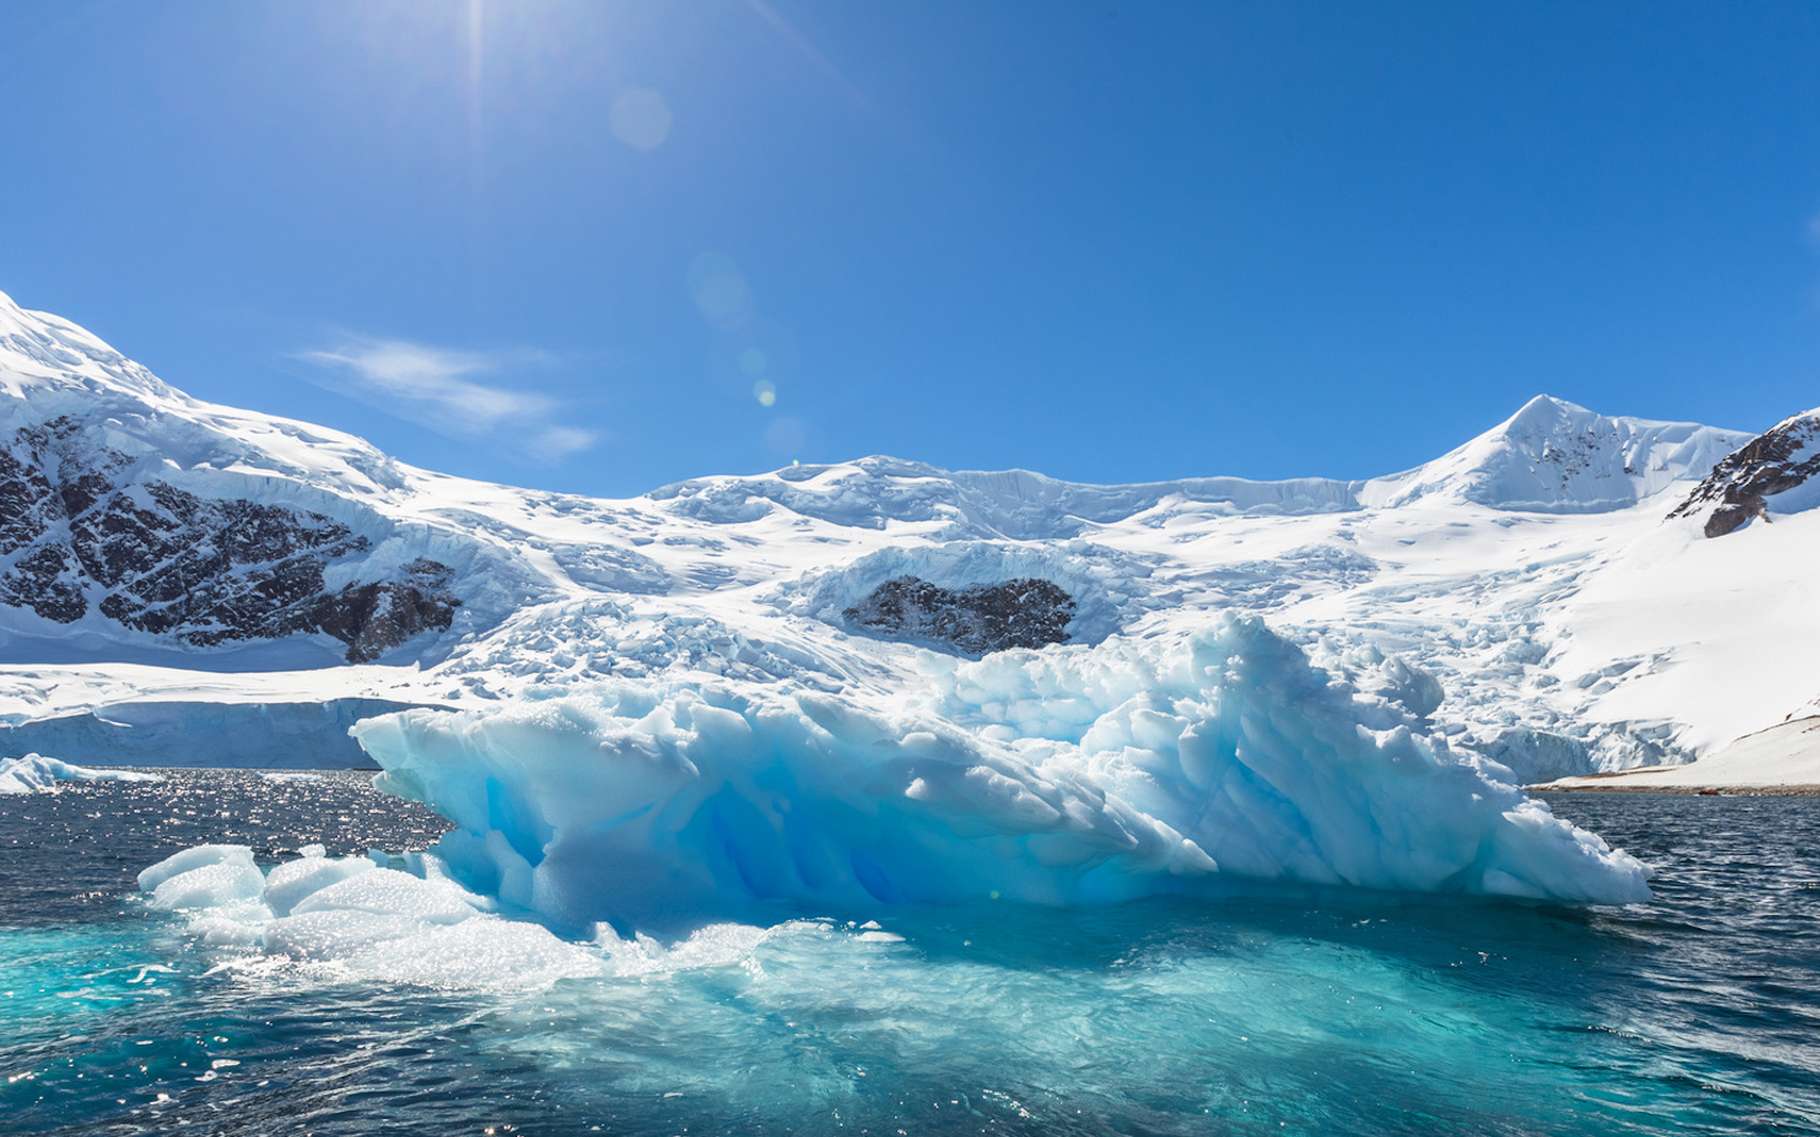 La calotte polaire Ouest-Antarctique pourrait s'effondrer, comme il y a 125.000 ans